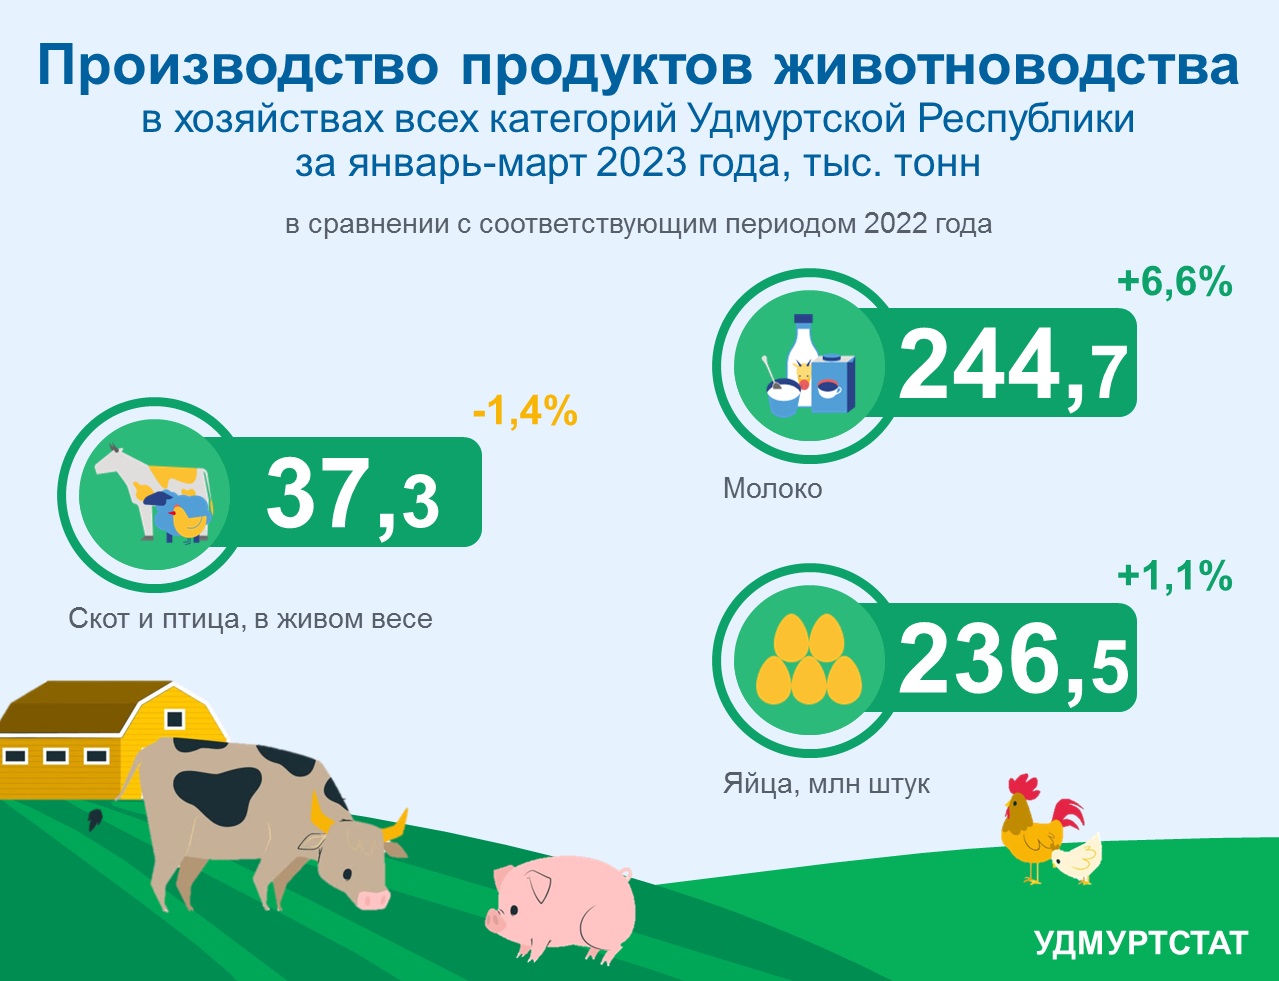 Производство продуктов животноводства в хозяйствах всех категорий УР за январь-март 2023 года.